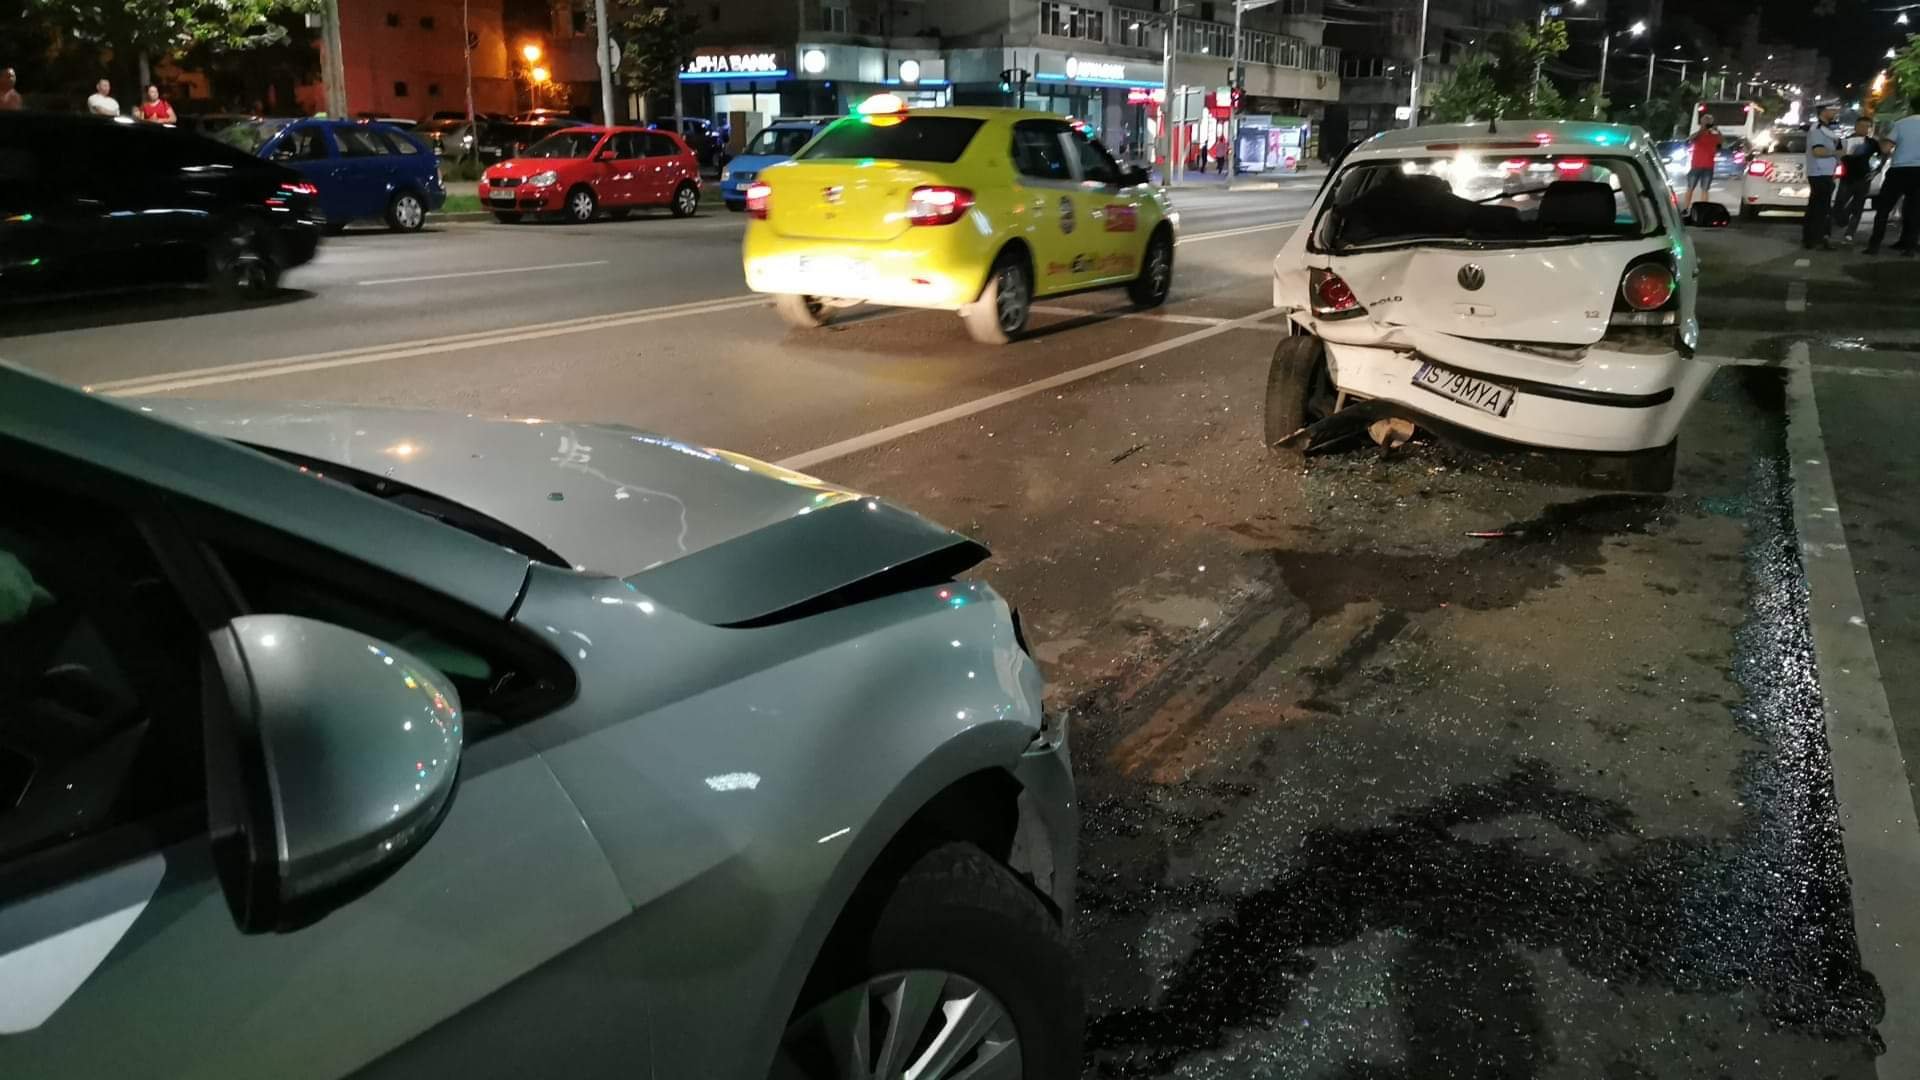  VIDEO: Accident cu patru mașini în Păcurari provocat de un șofer beat